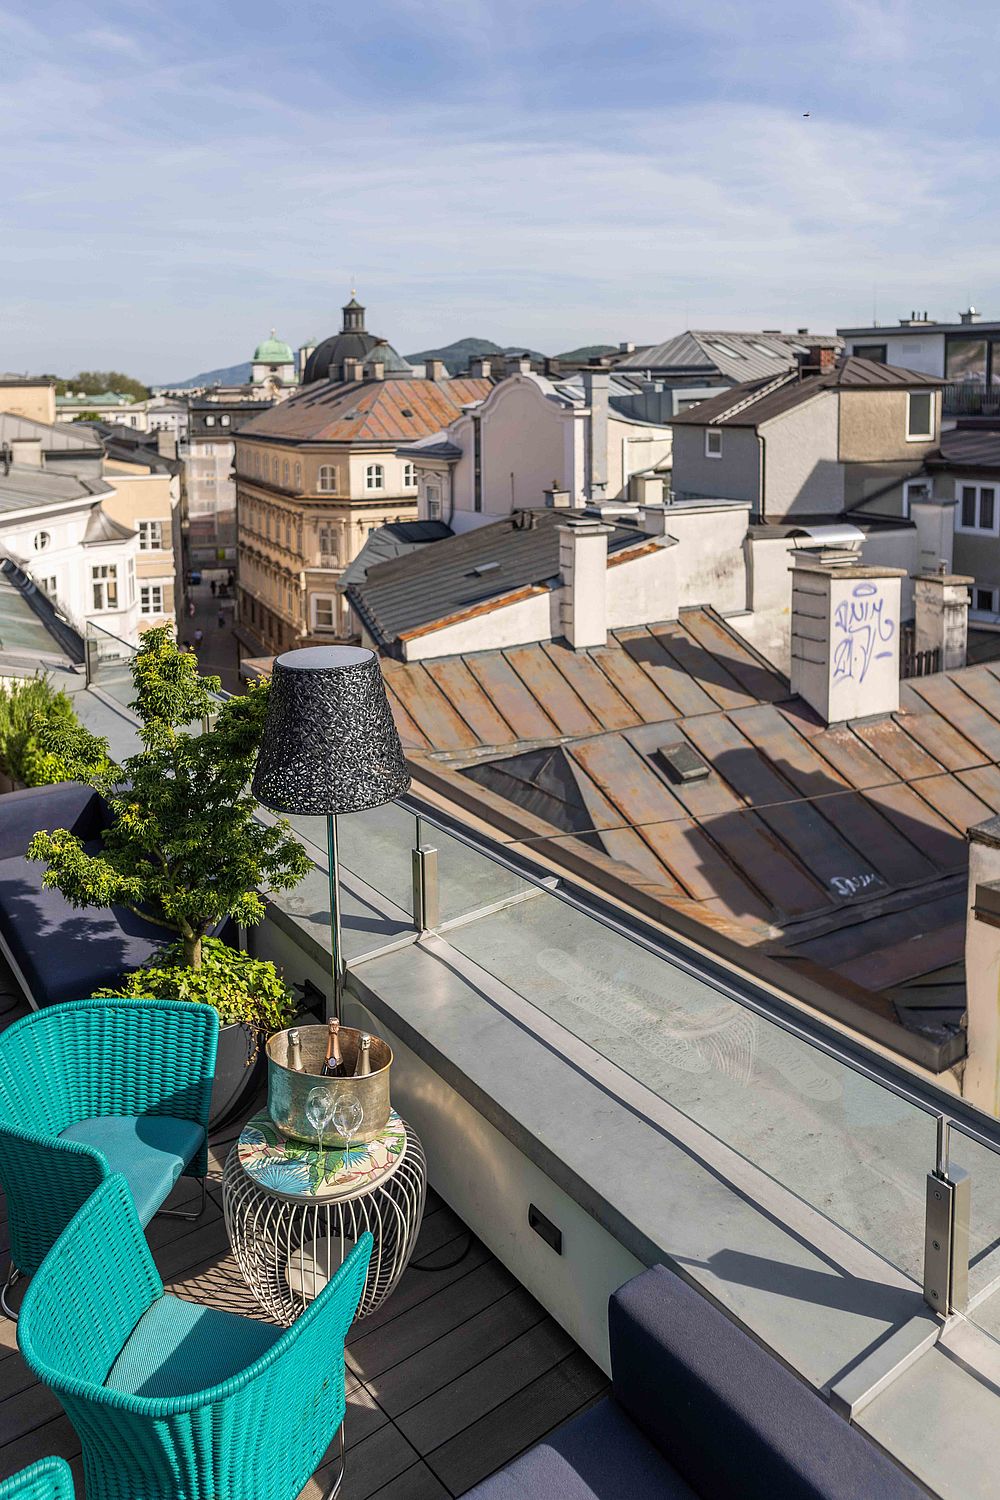 Terrasse des Hotel Stein mit blauen Rattan-Sesseln, Champagnerflaschen in einer Silberschale auf einem Metalltisch und Blick über die Dächer von Salzburg